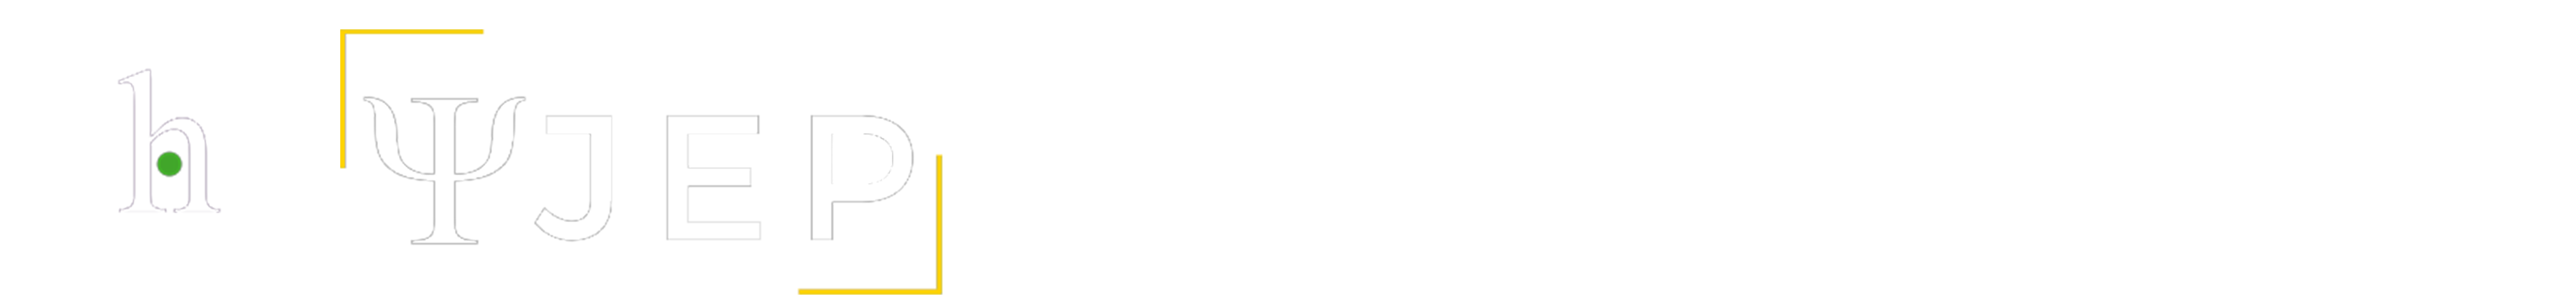 IJRS Logo